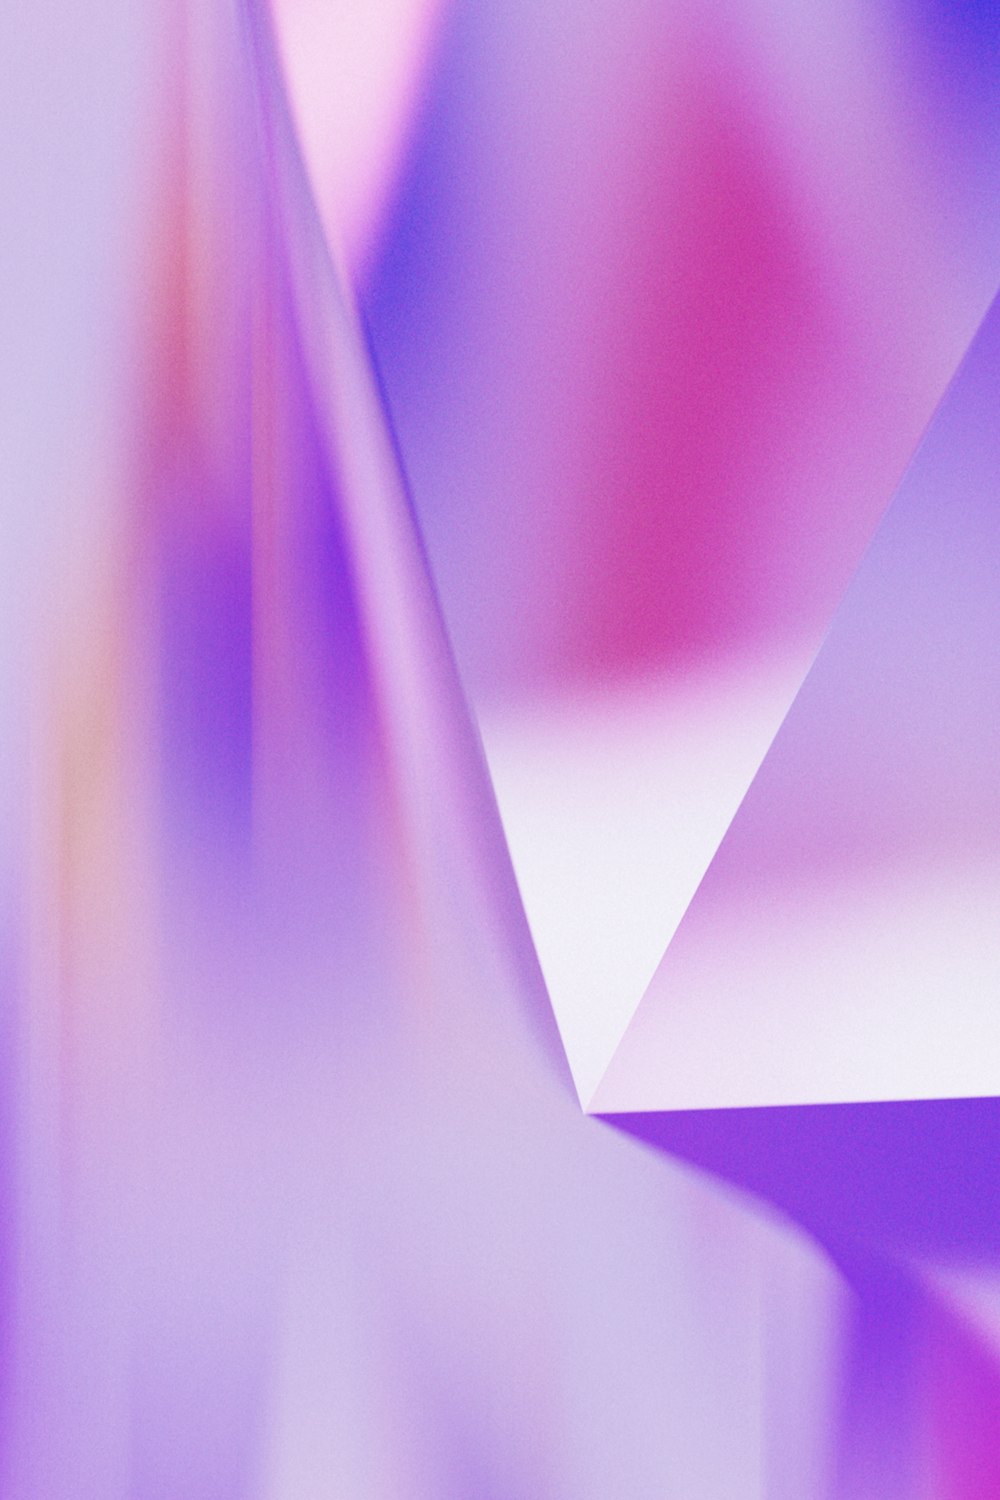 une image floue d’un objet blanc et violet